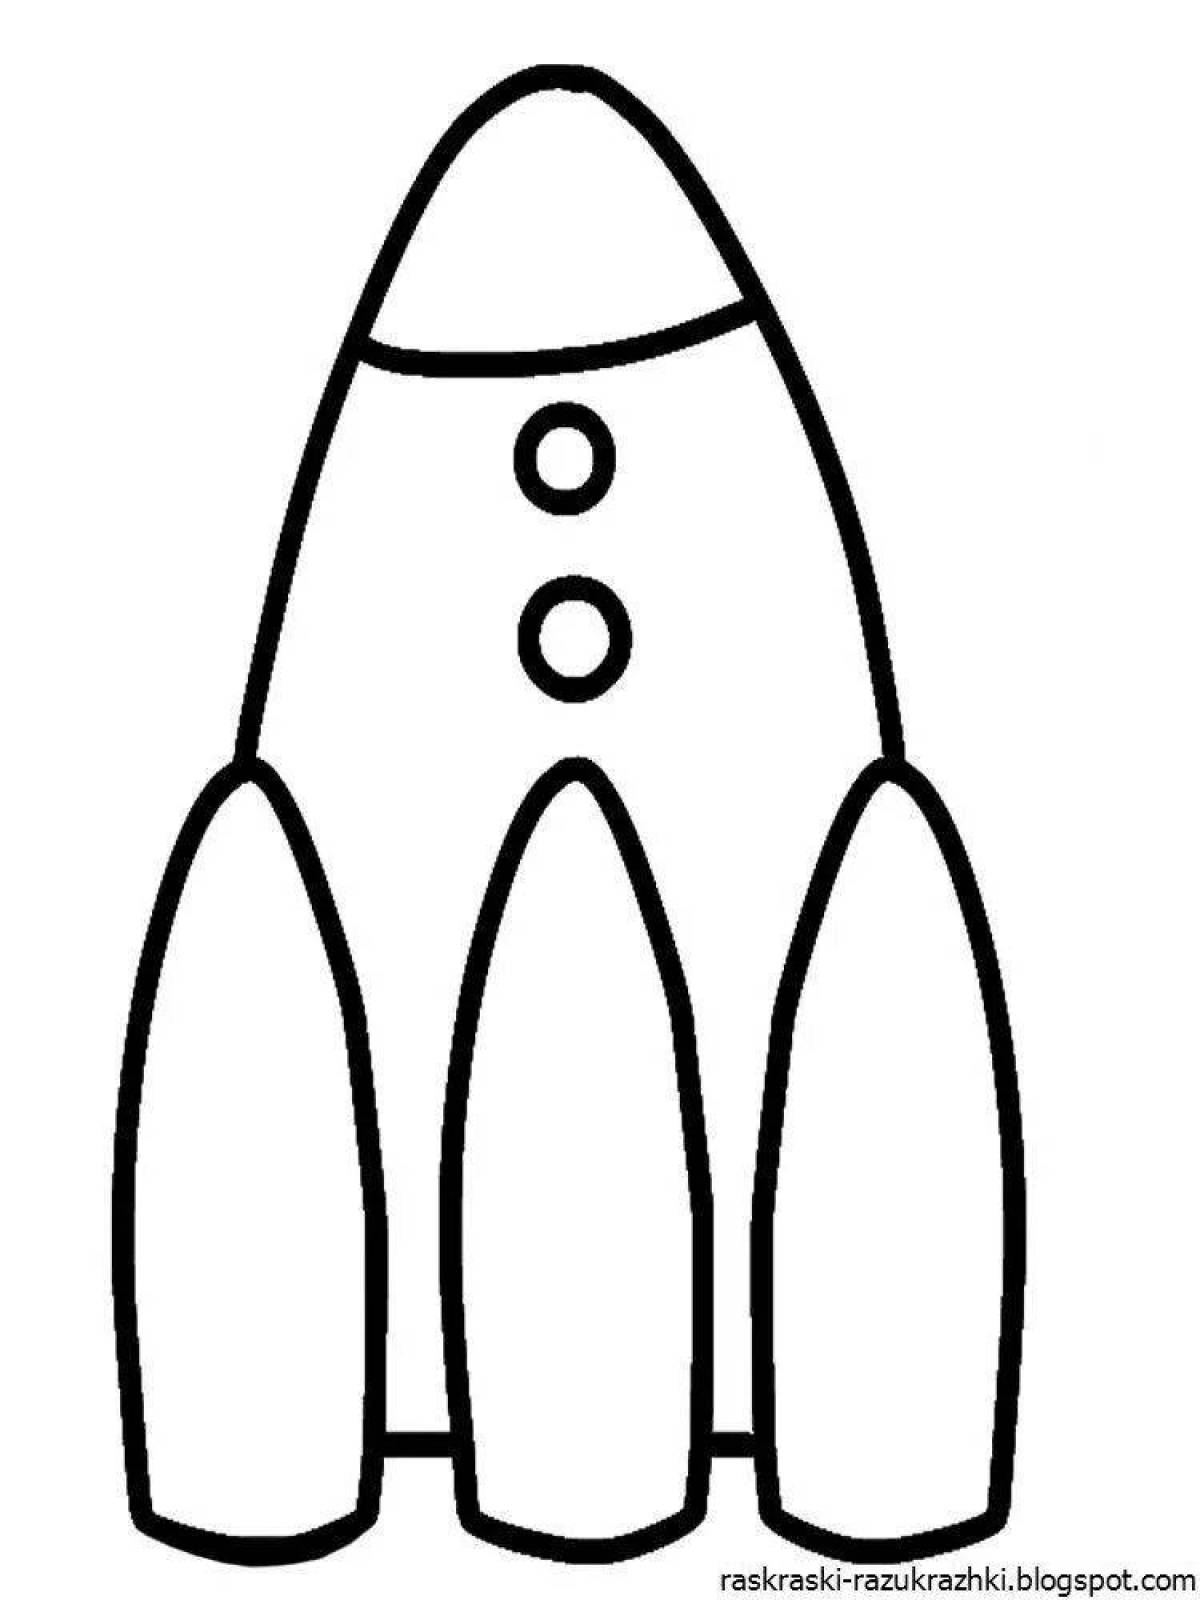 Чудесная ракета-раскраска для детей